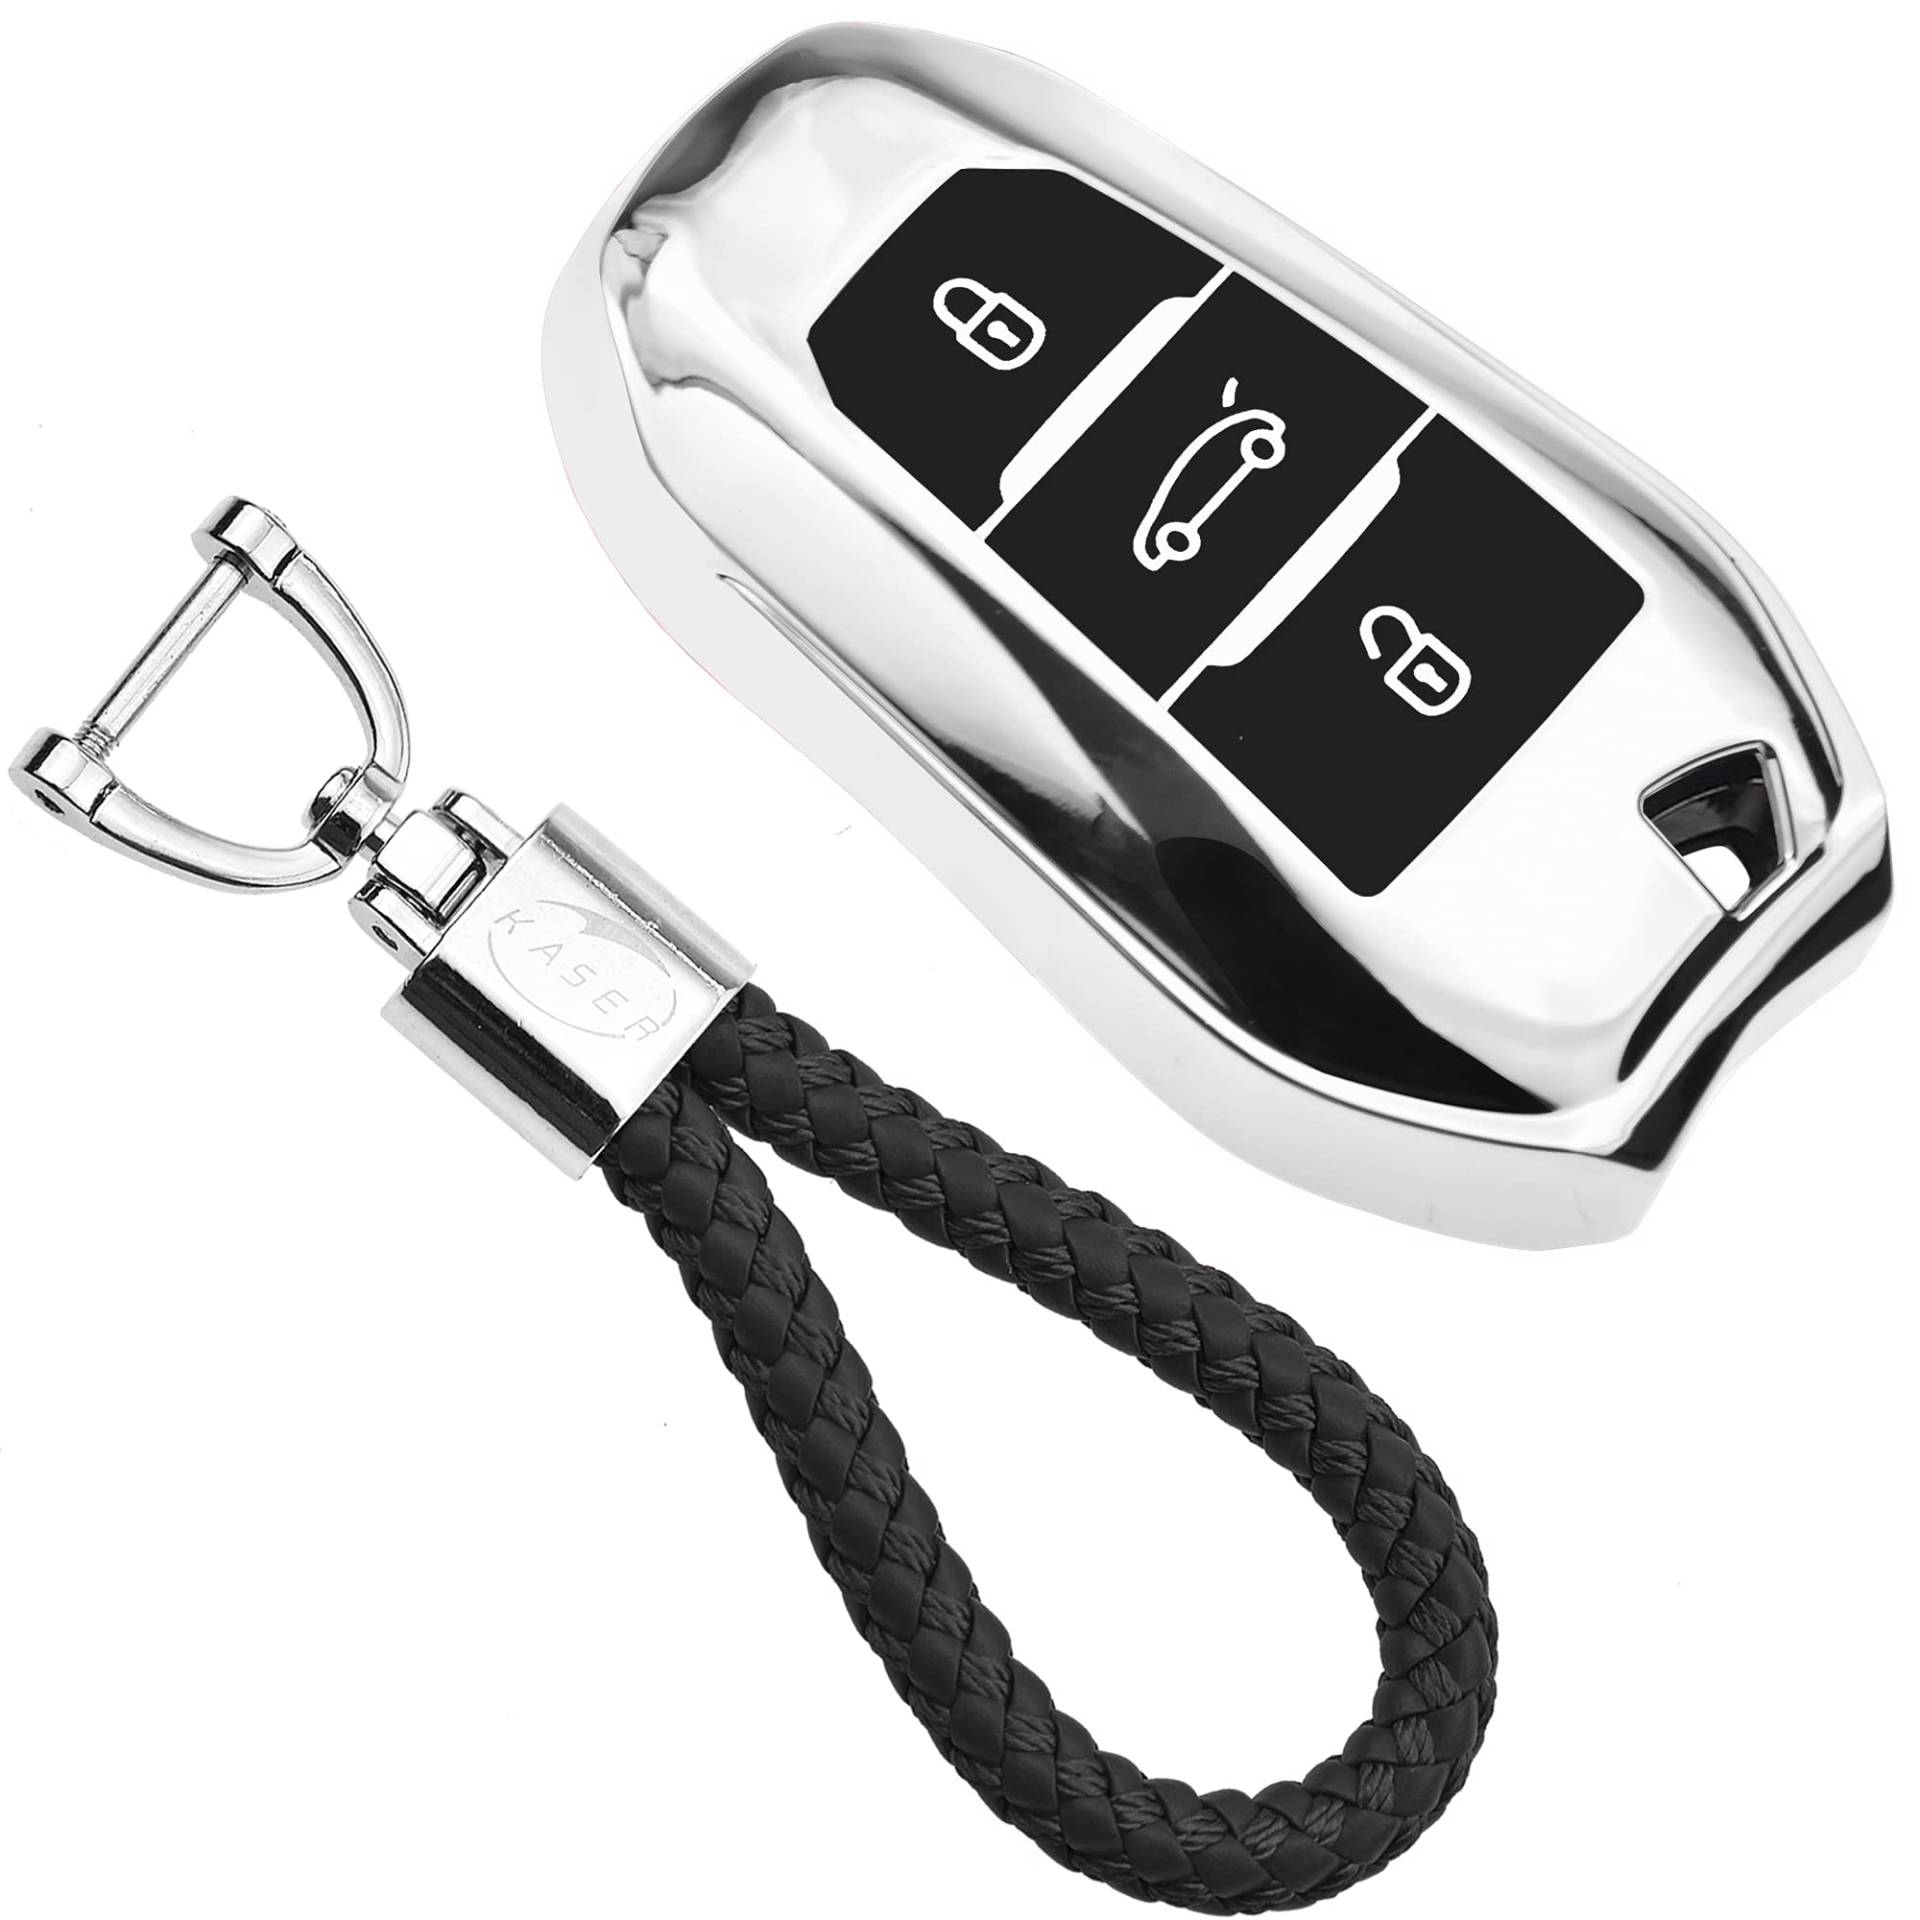 KASER Autoschlüssel Hülle kompatibel für Peugeot Citroen Cover TPU Silikon Hochglanz Schutzhülle Schlüsselhülle Fernbedienung Keyless 108 208 308 508 Citrone C1 C3 C5 Schlüsselbund (Silber) von Kaser